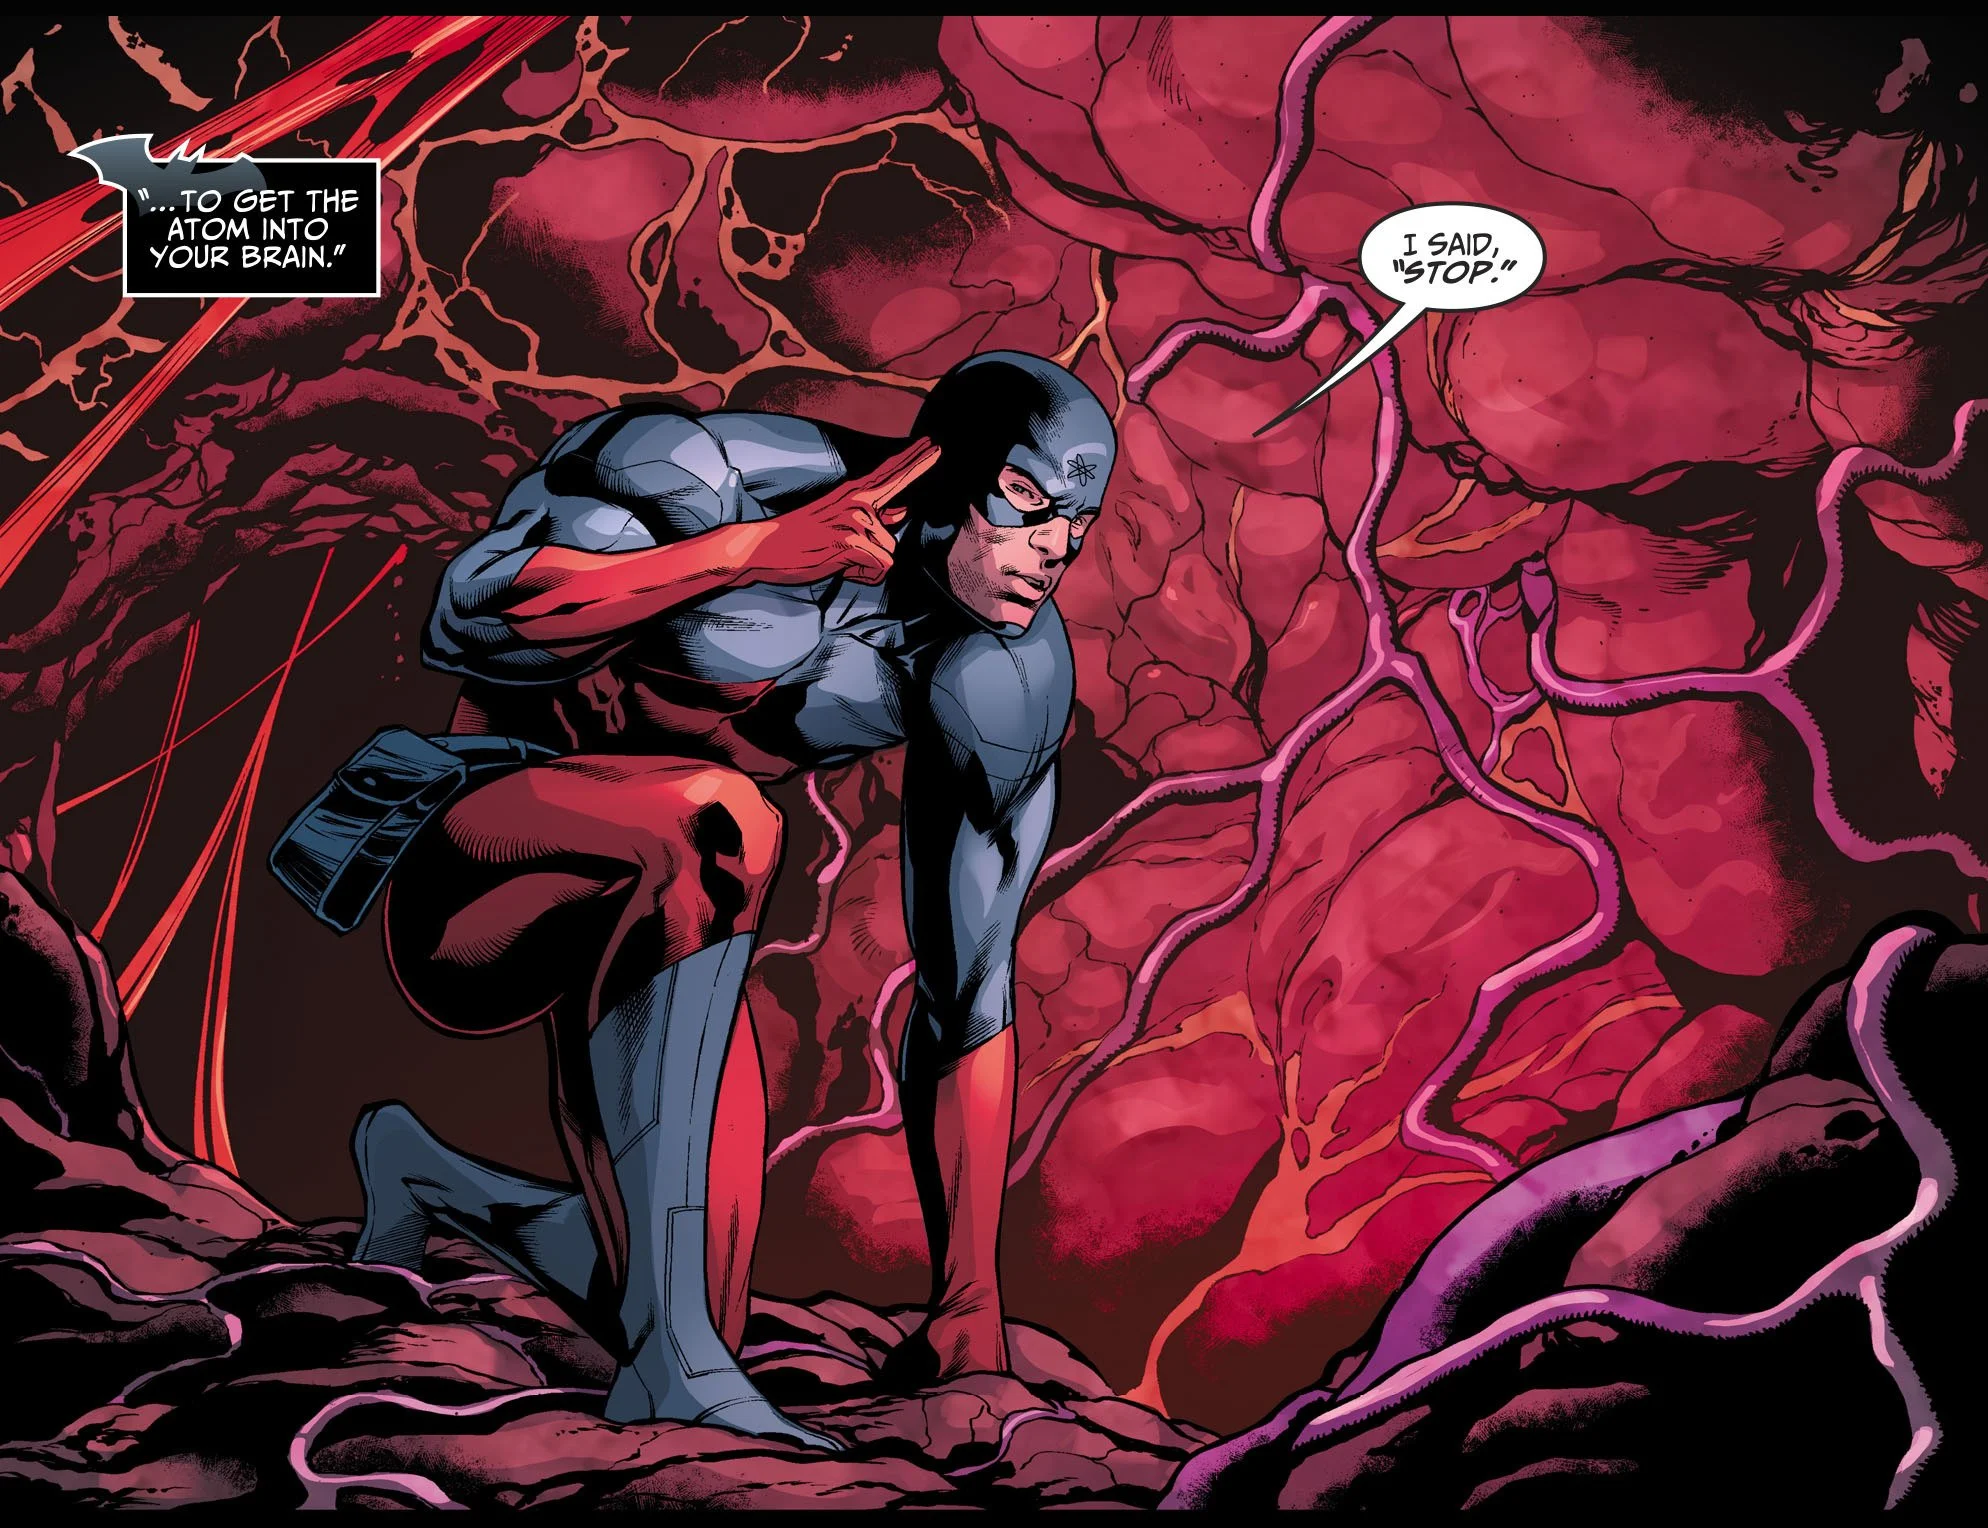 Супермен в Injustice 2 устроил побег. Как Бэтмен остановит его? - фото 2